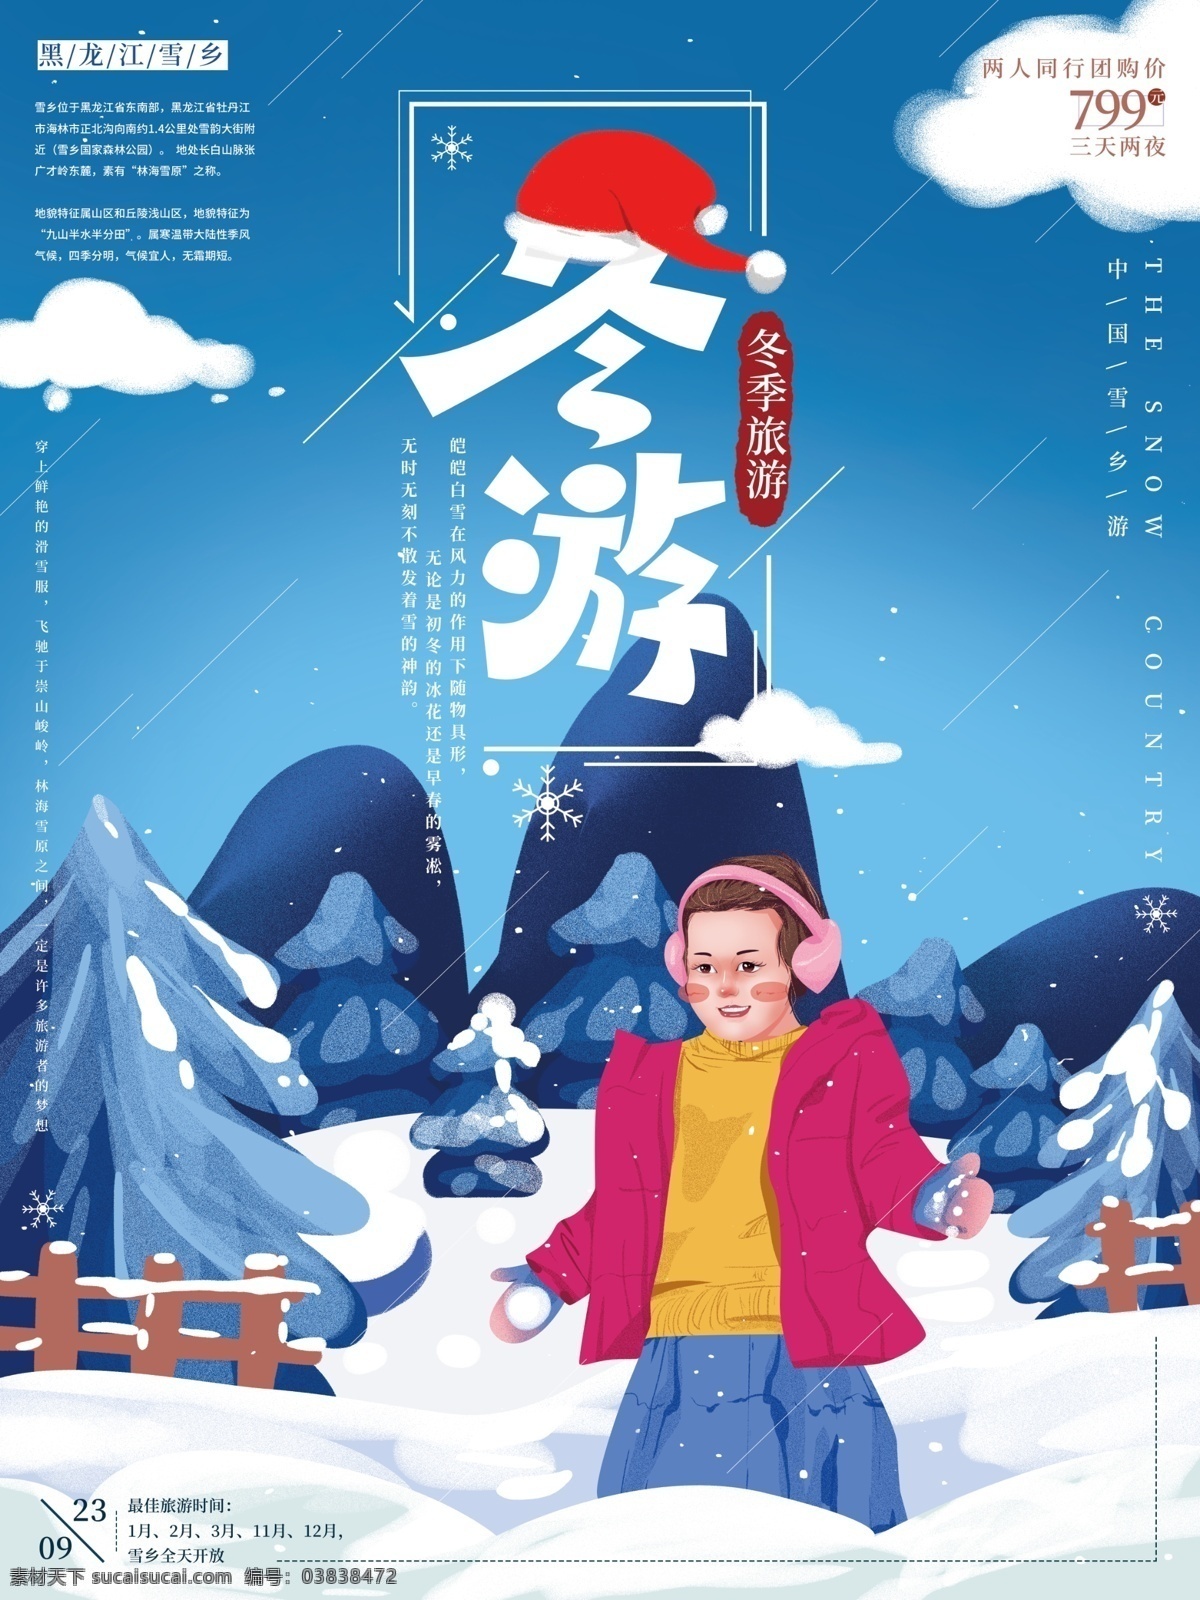 原创 手绘 简约 冬季 玩 雪 海报 雪景 风景 插画 小孩 旅游 雪乡 蓝色 旅游海报